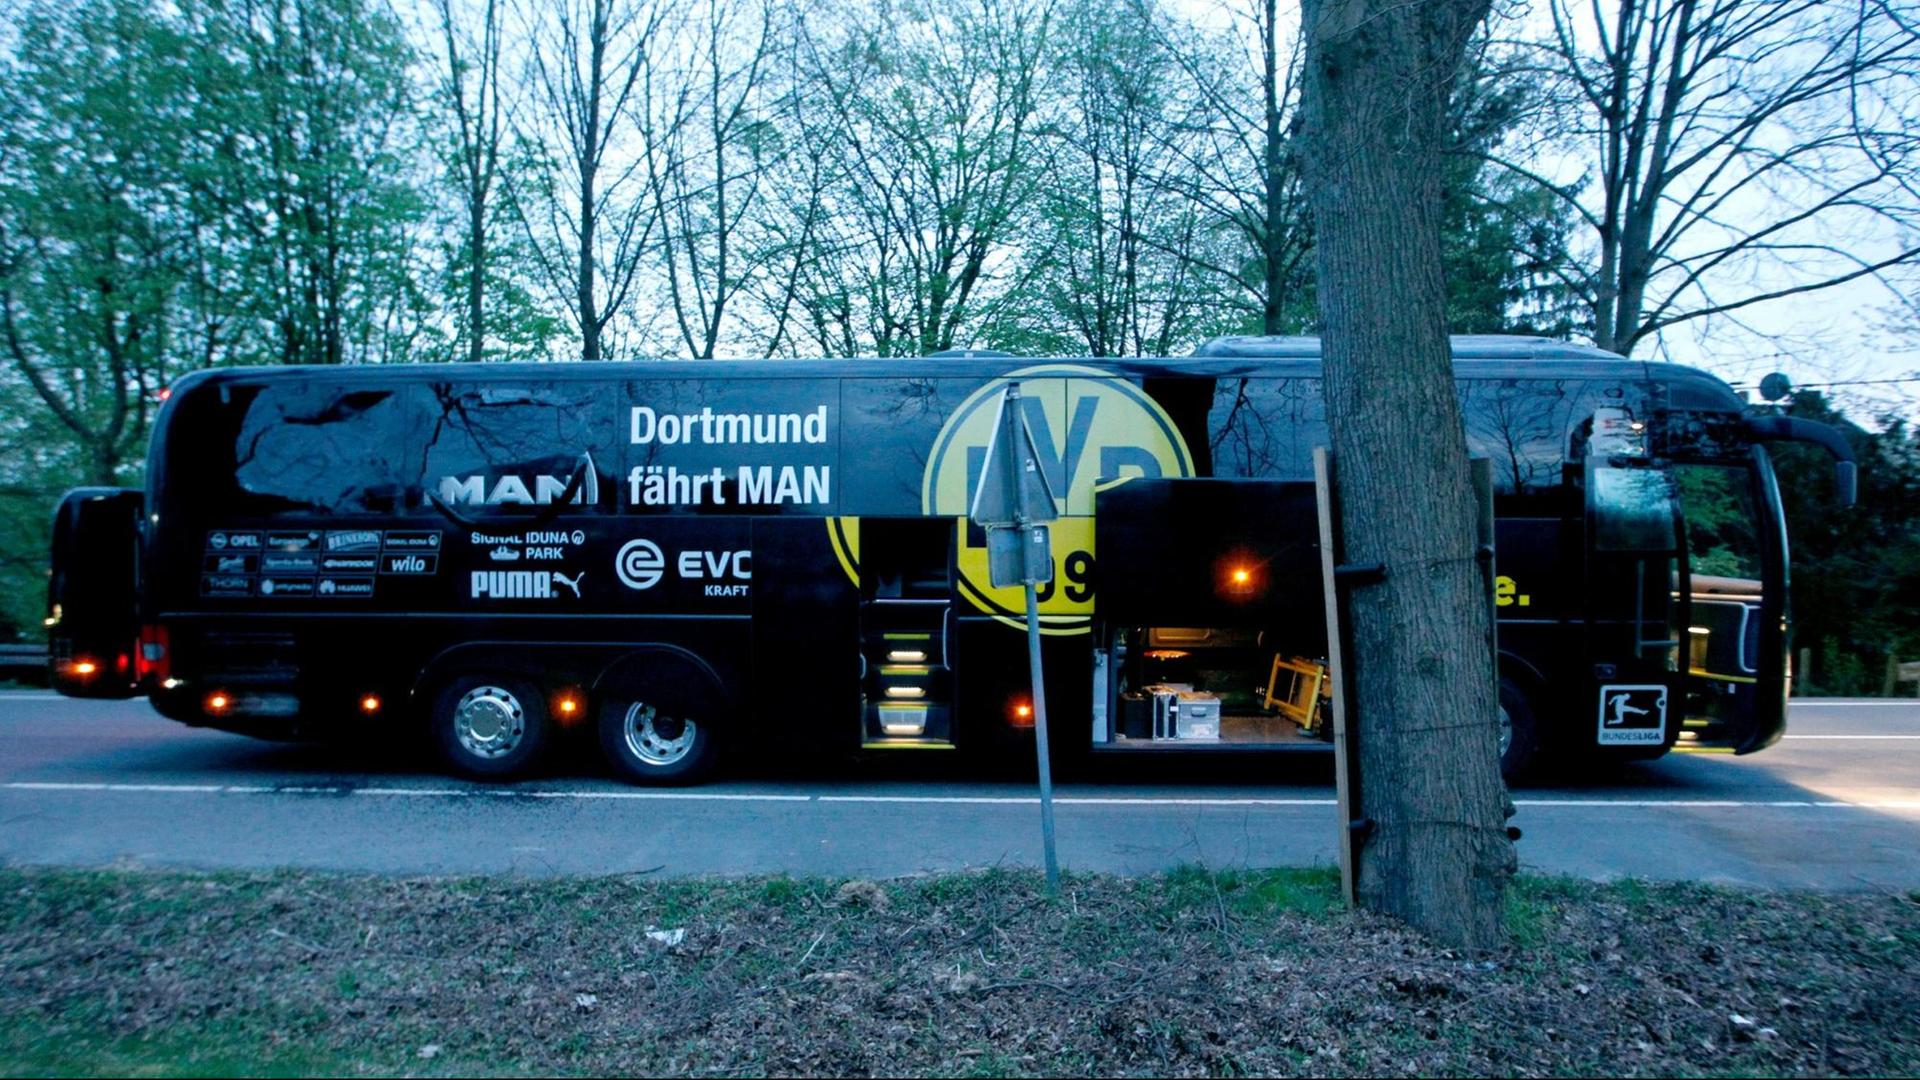 Der Bus von Borussia Dortmund steht mit einer beschädigten Scheibe am 11.04.2017 in Dortmund (Nordrhein-Westfalen) an einer Straße.